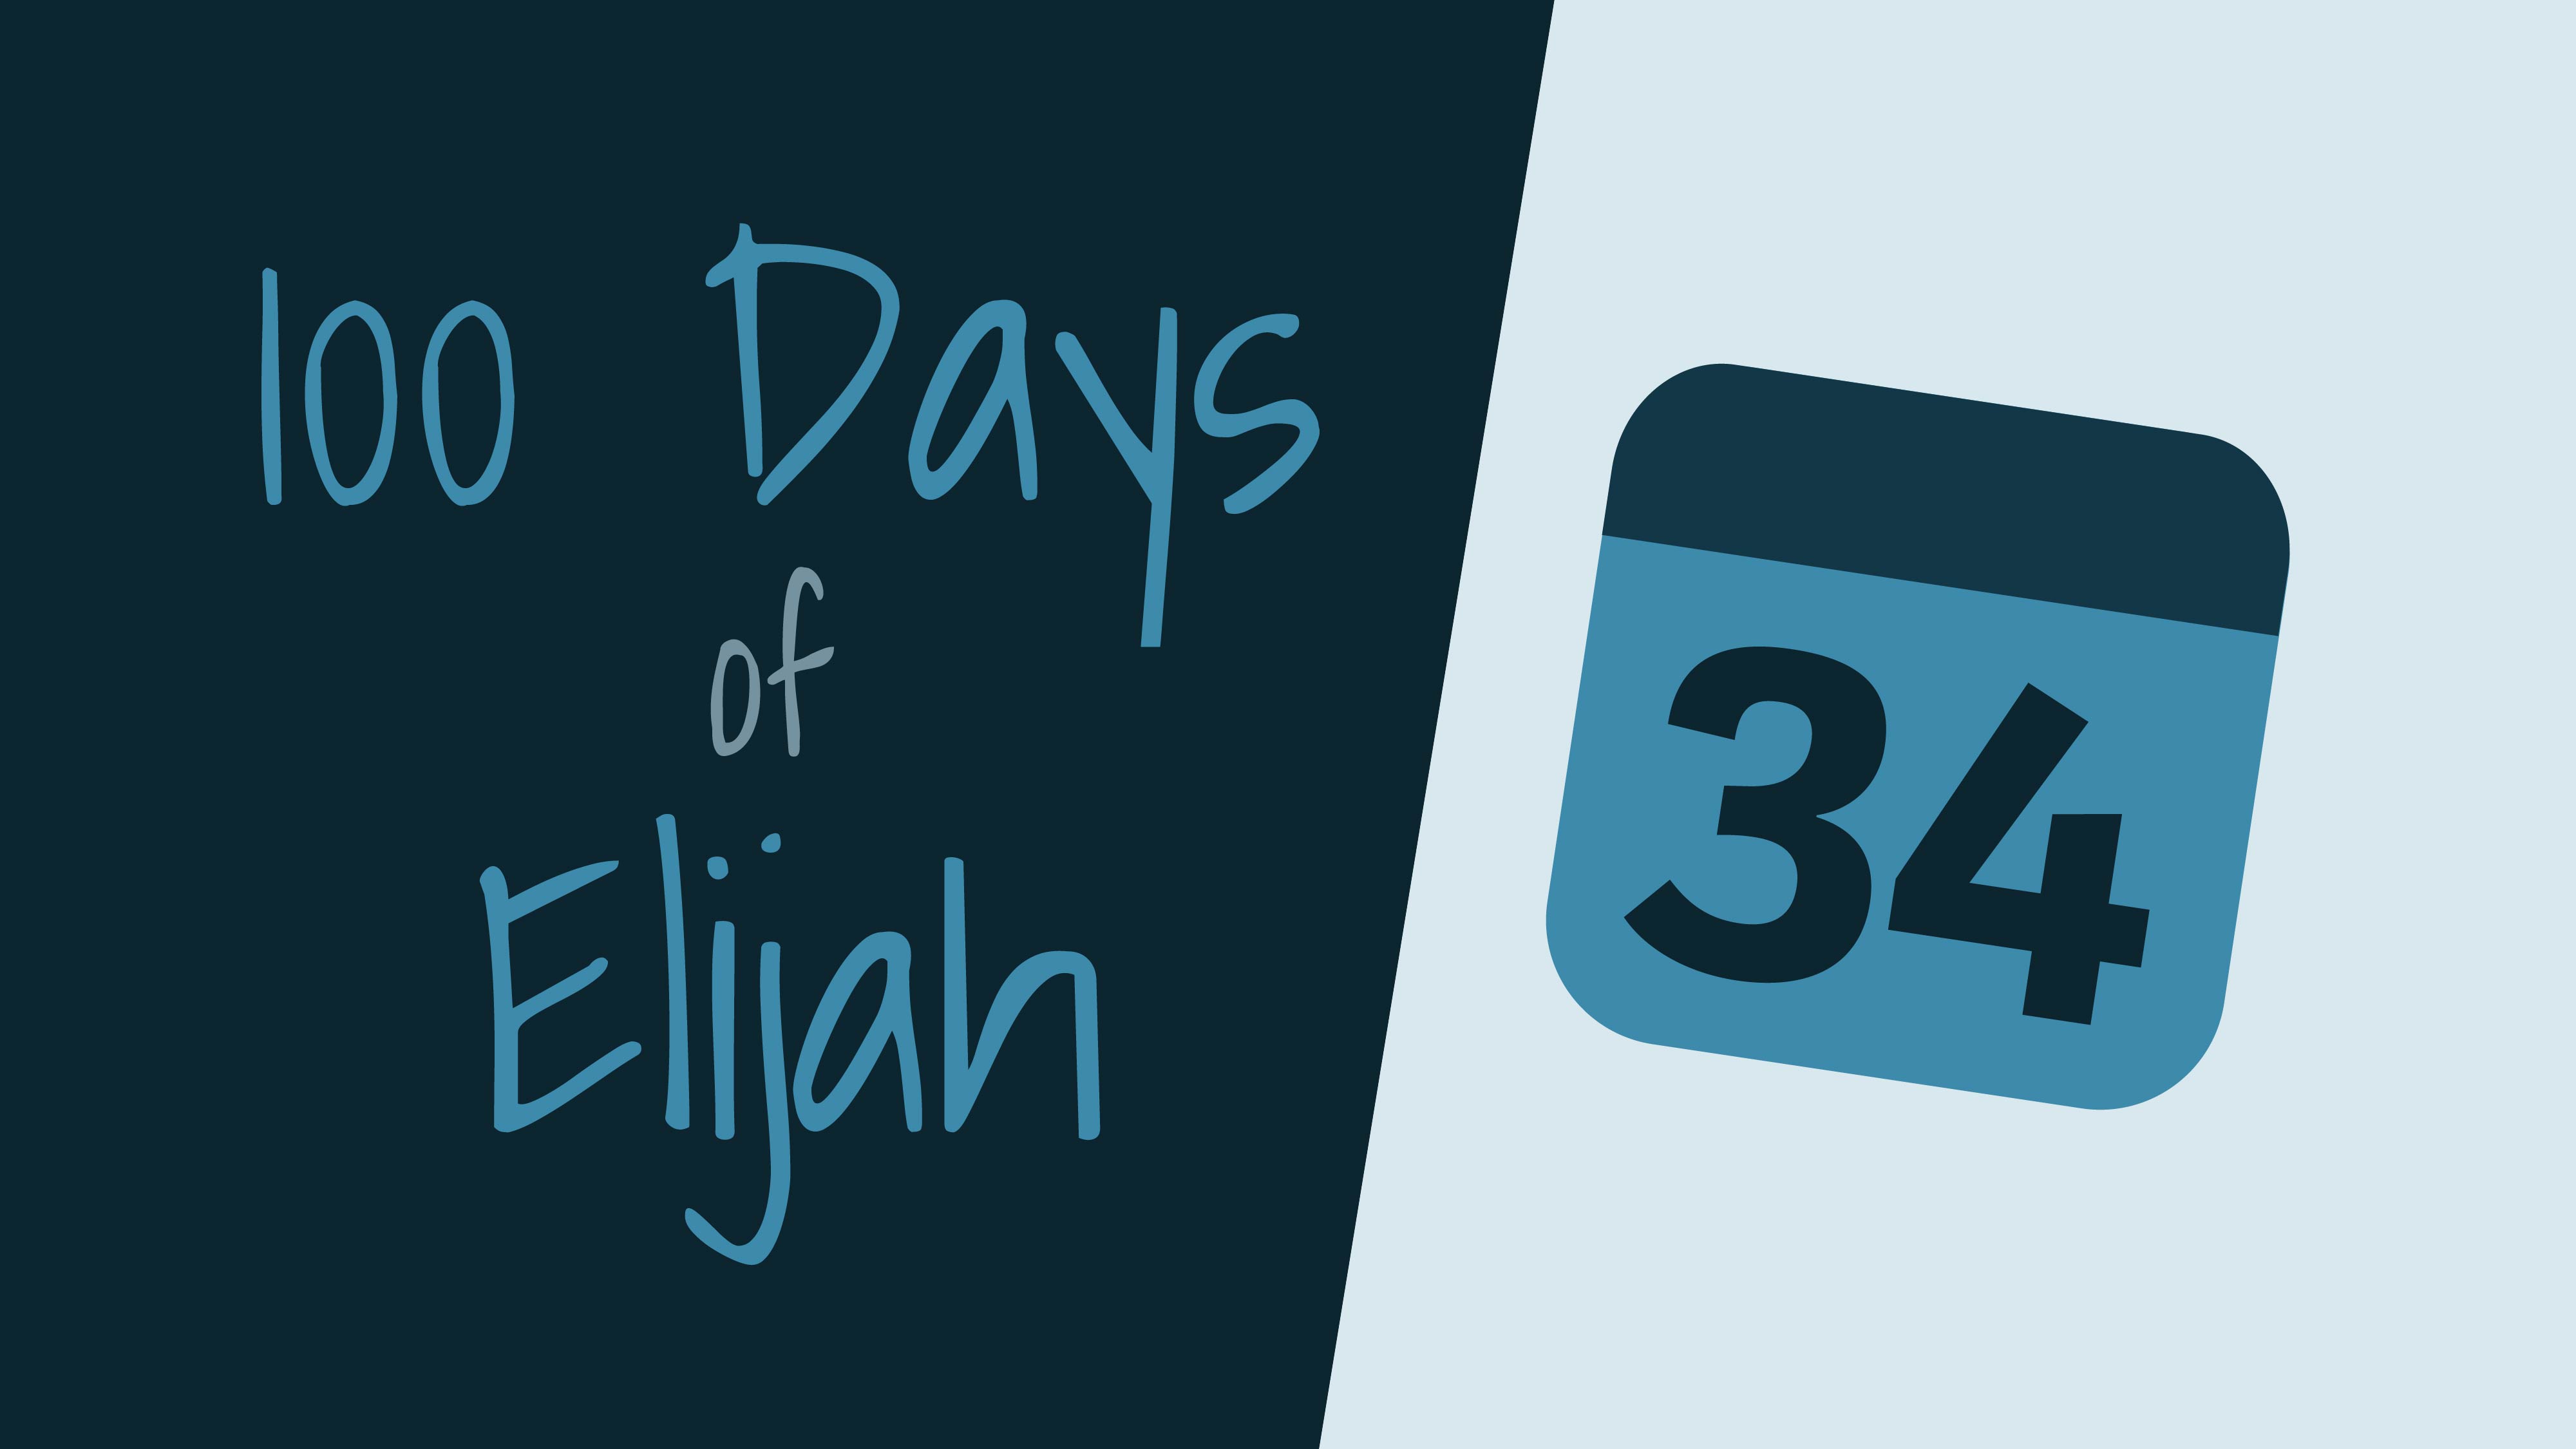 100 Days of Elijah: Day 34